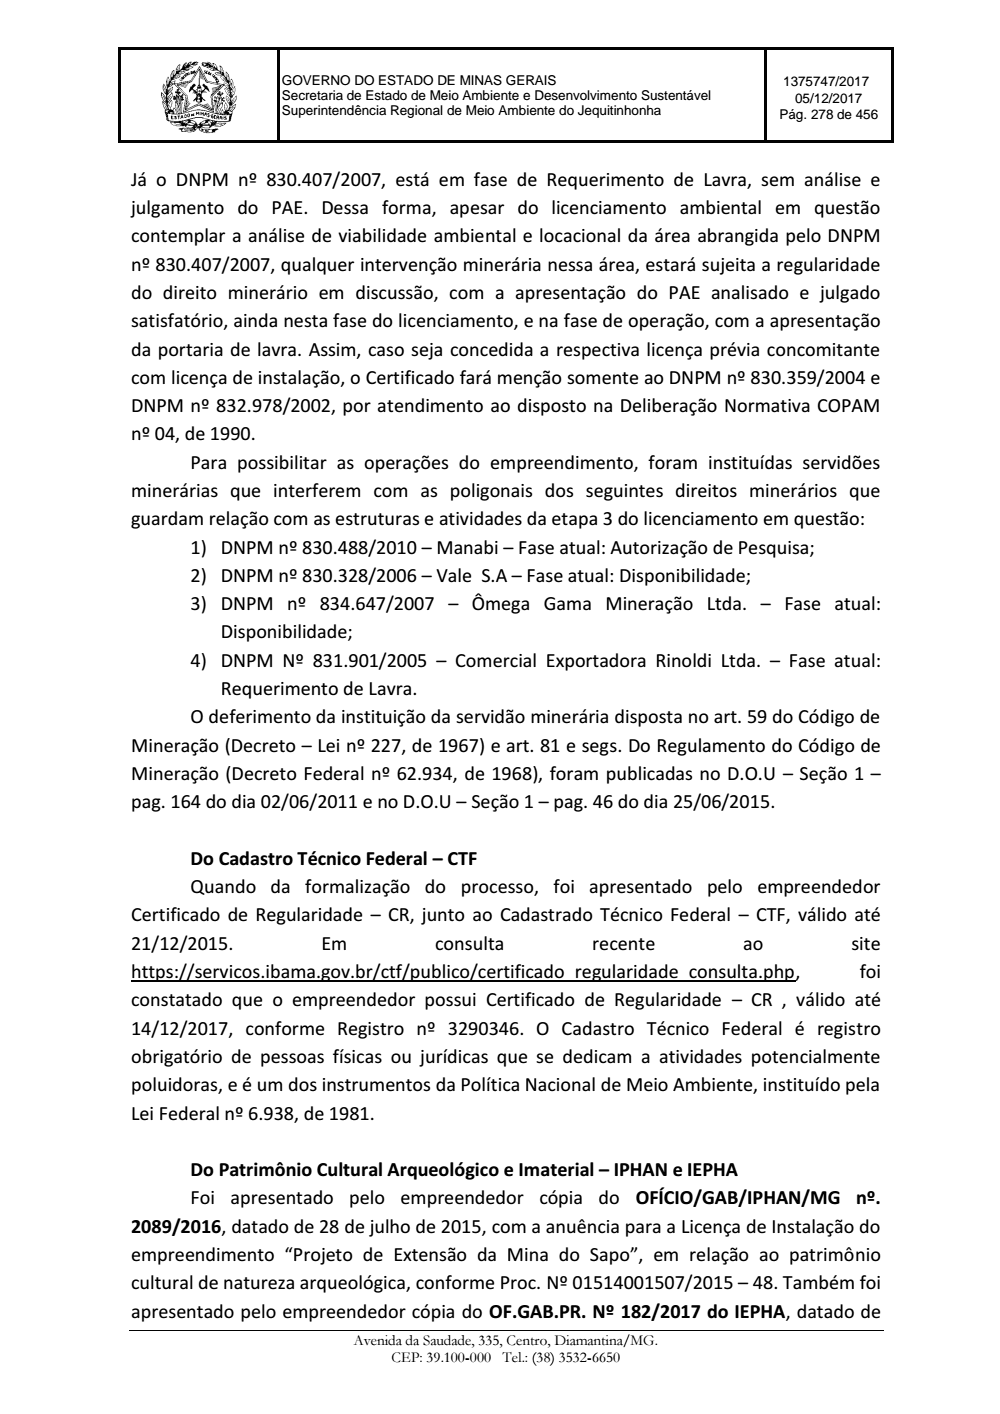 Page 278 from Parecer único da Secretaria de estado de Meio Ambiente e Desenvolvimento Sustentável (SEMAD)